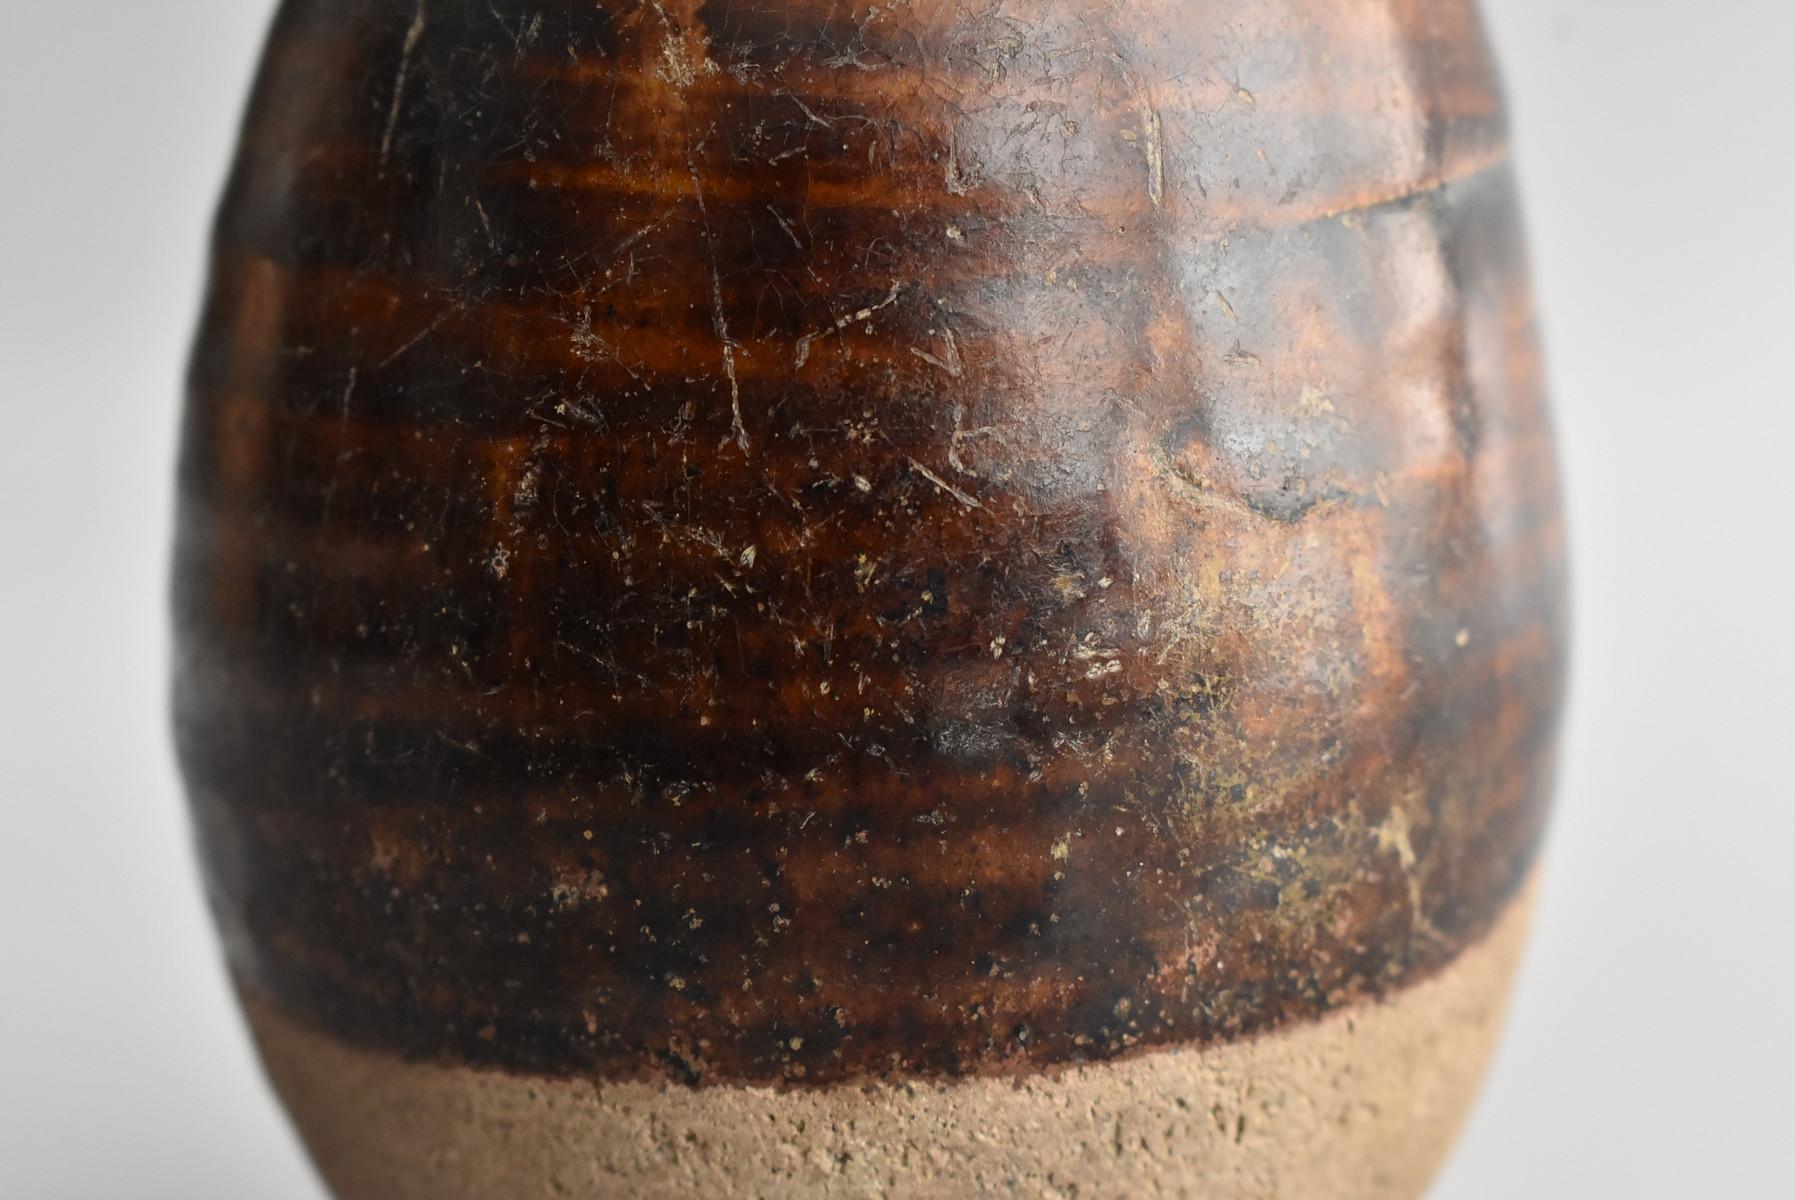 Thai Antique Bottle 15th Century / Old Vase / Southeast Asian Antiques 3